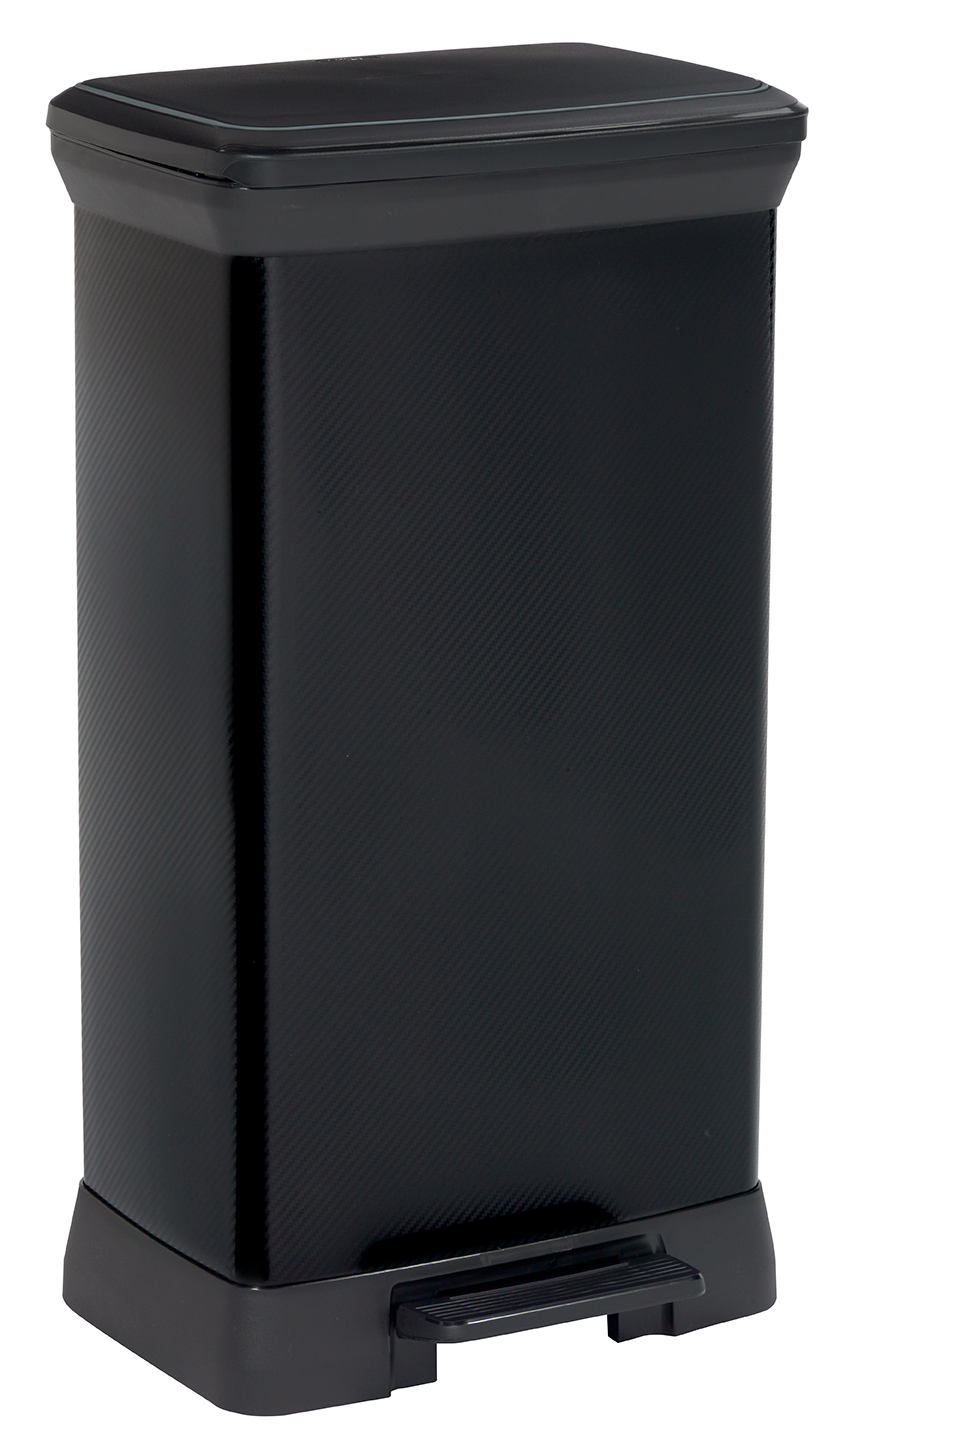 CURVER Deco Bin Mlleimer mit Pedal und Deckel, 50L, schwarz metallic